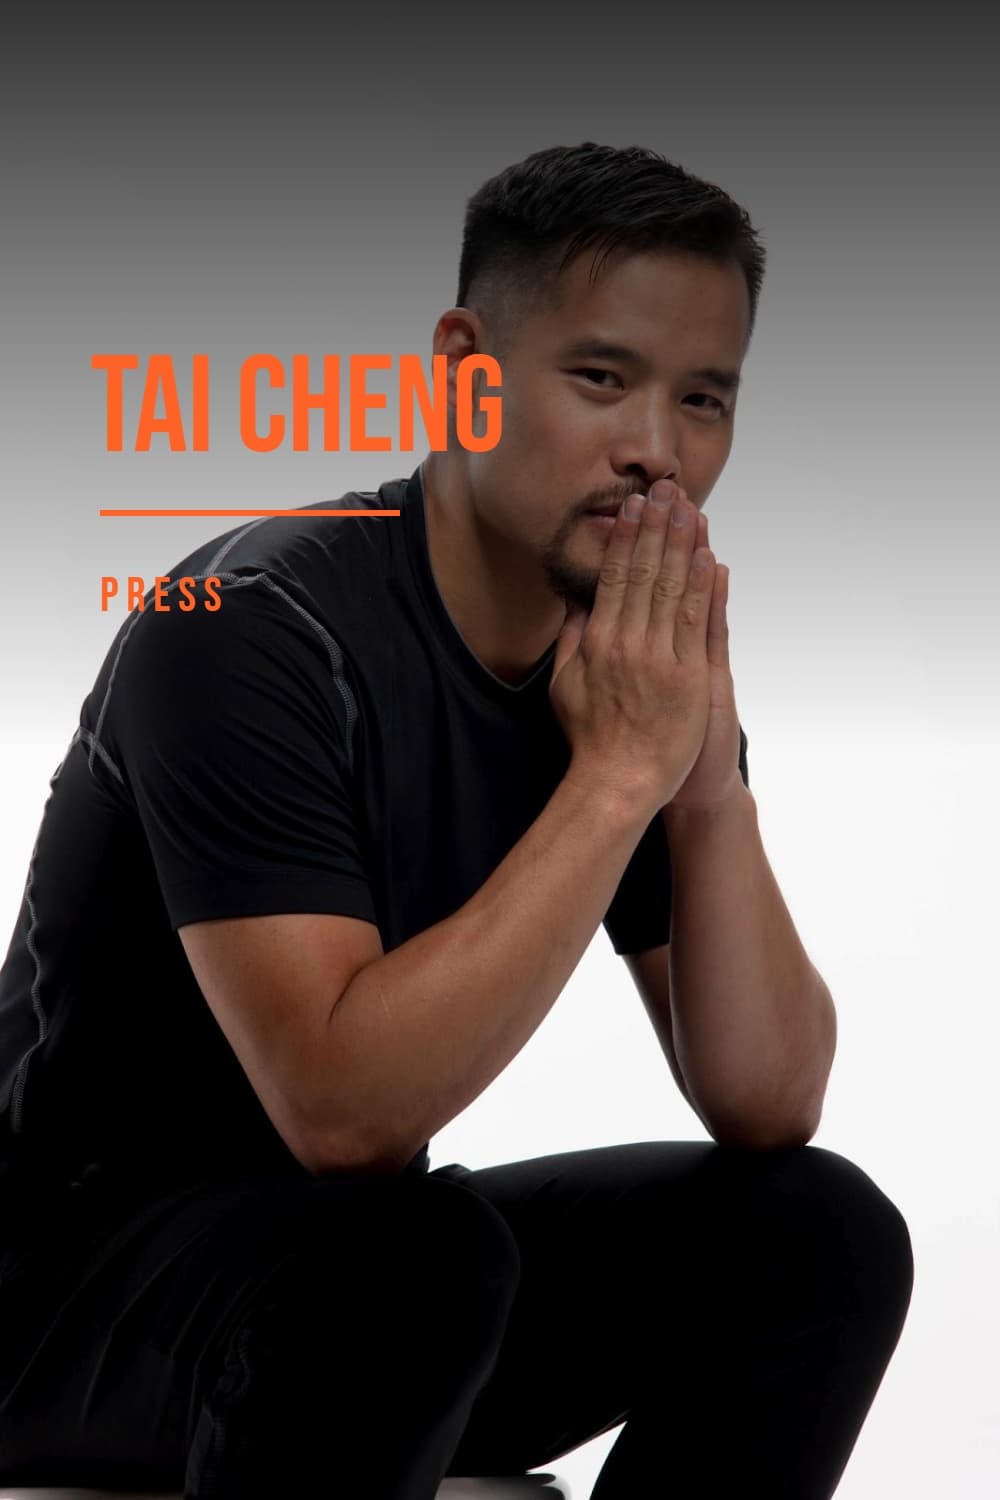 Tai Cheng - Press